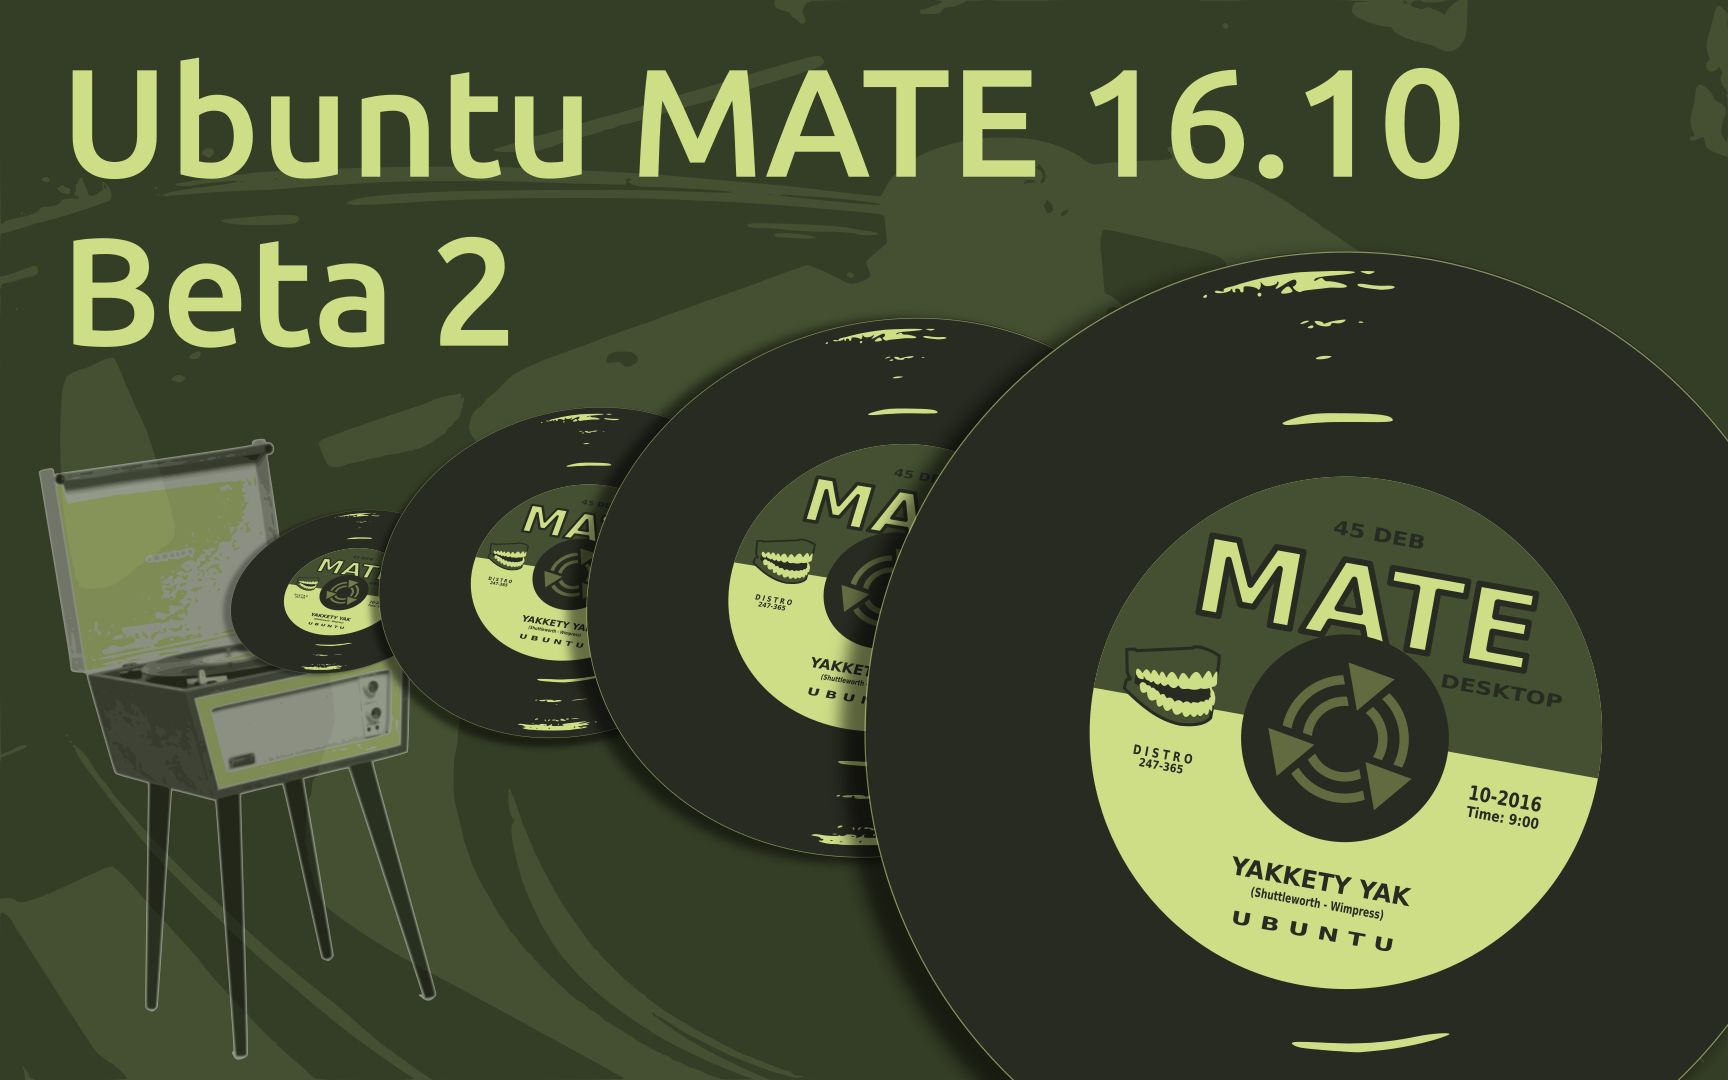 Ubuntu MATE 16.10 Beta 2